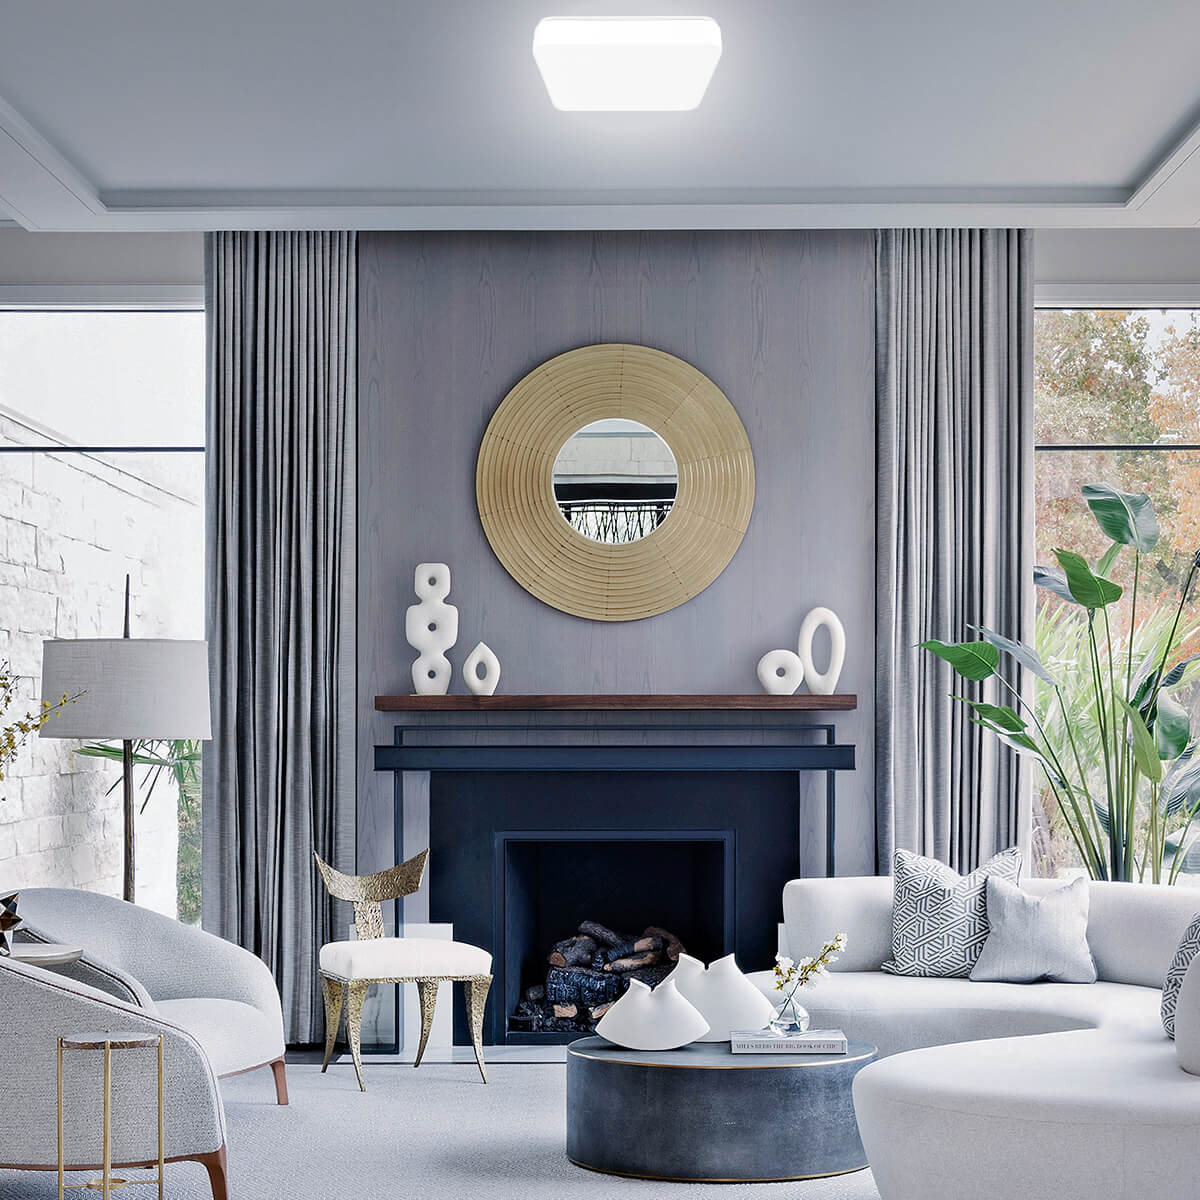 Square LED ceiling light for living room